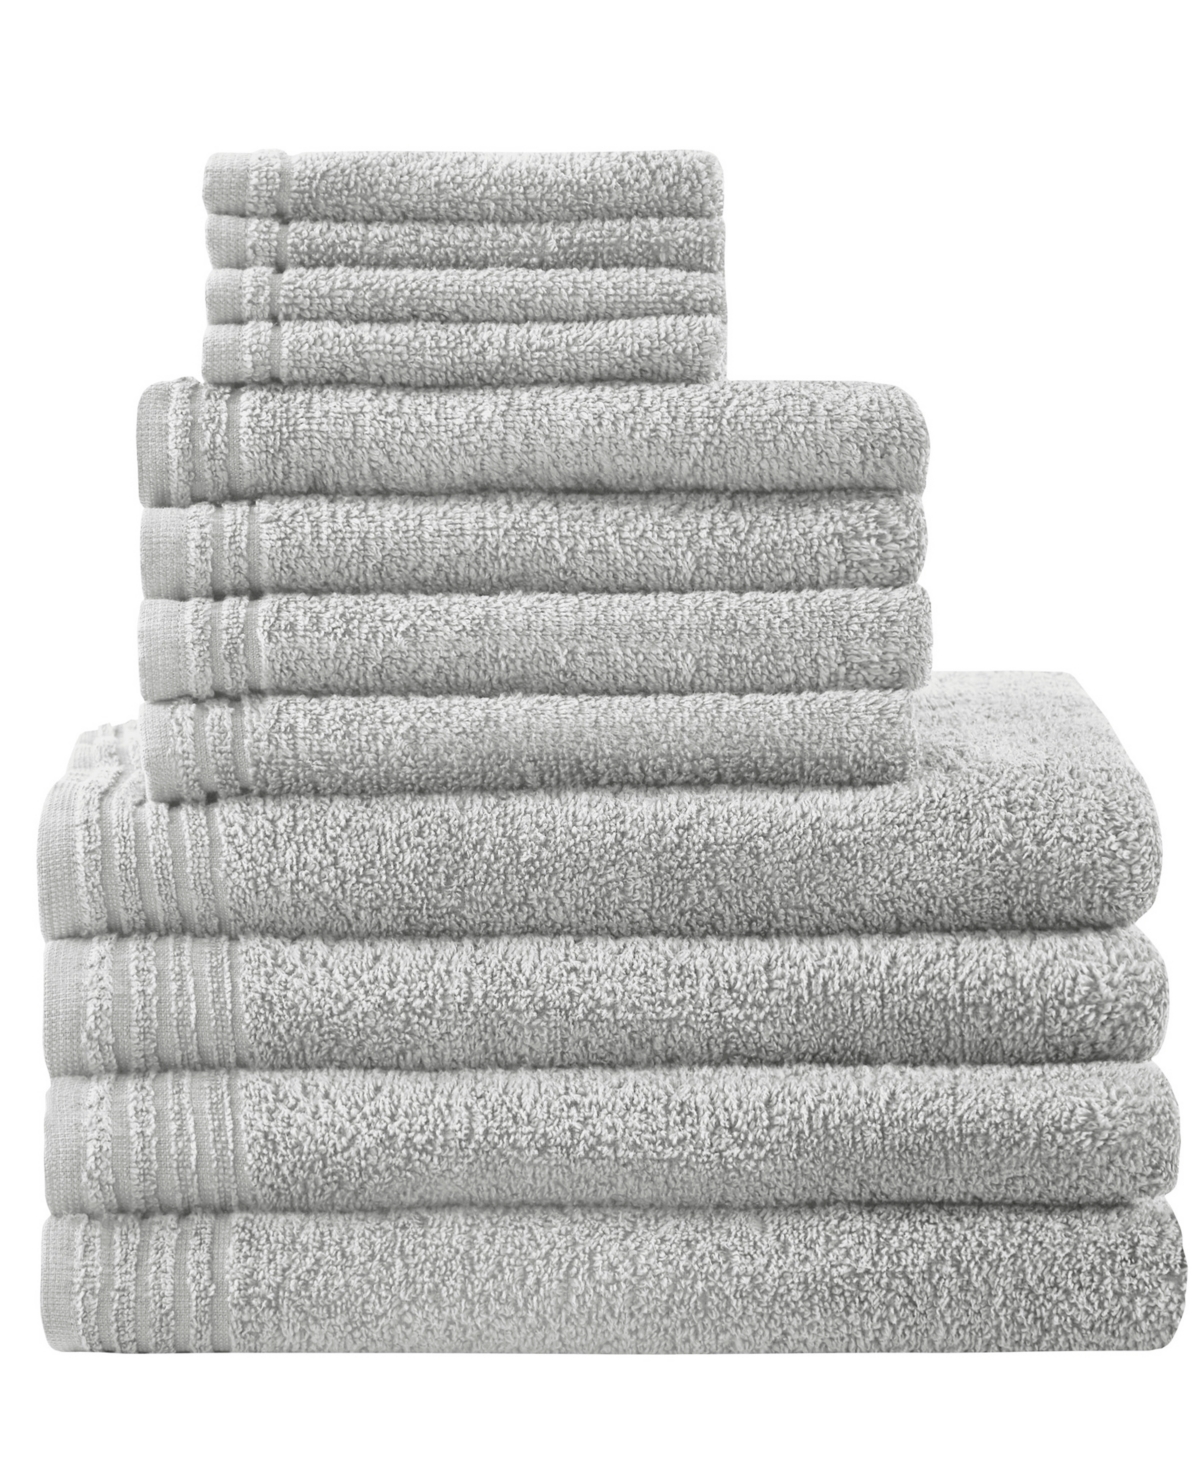 510 Design Big Bundle Cotton 12-Pc. Towel Set Bedding